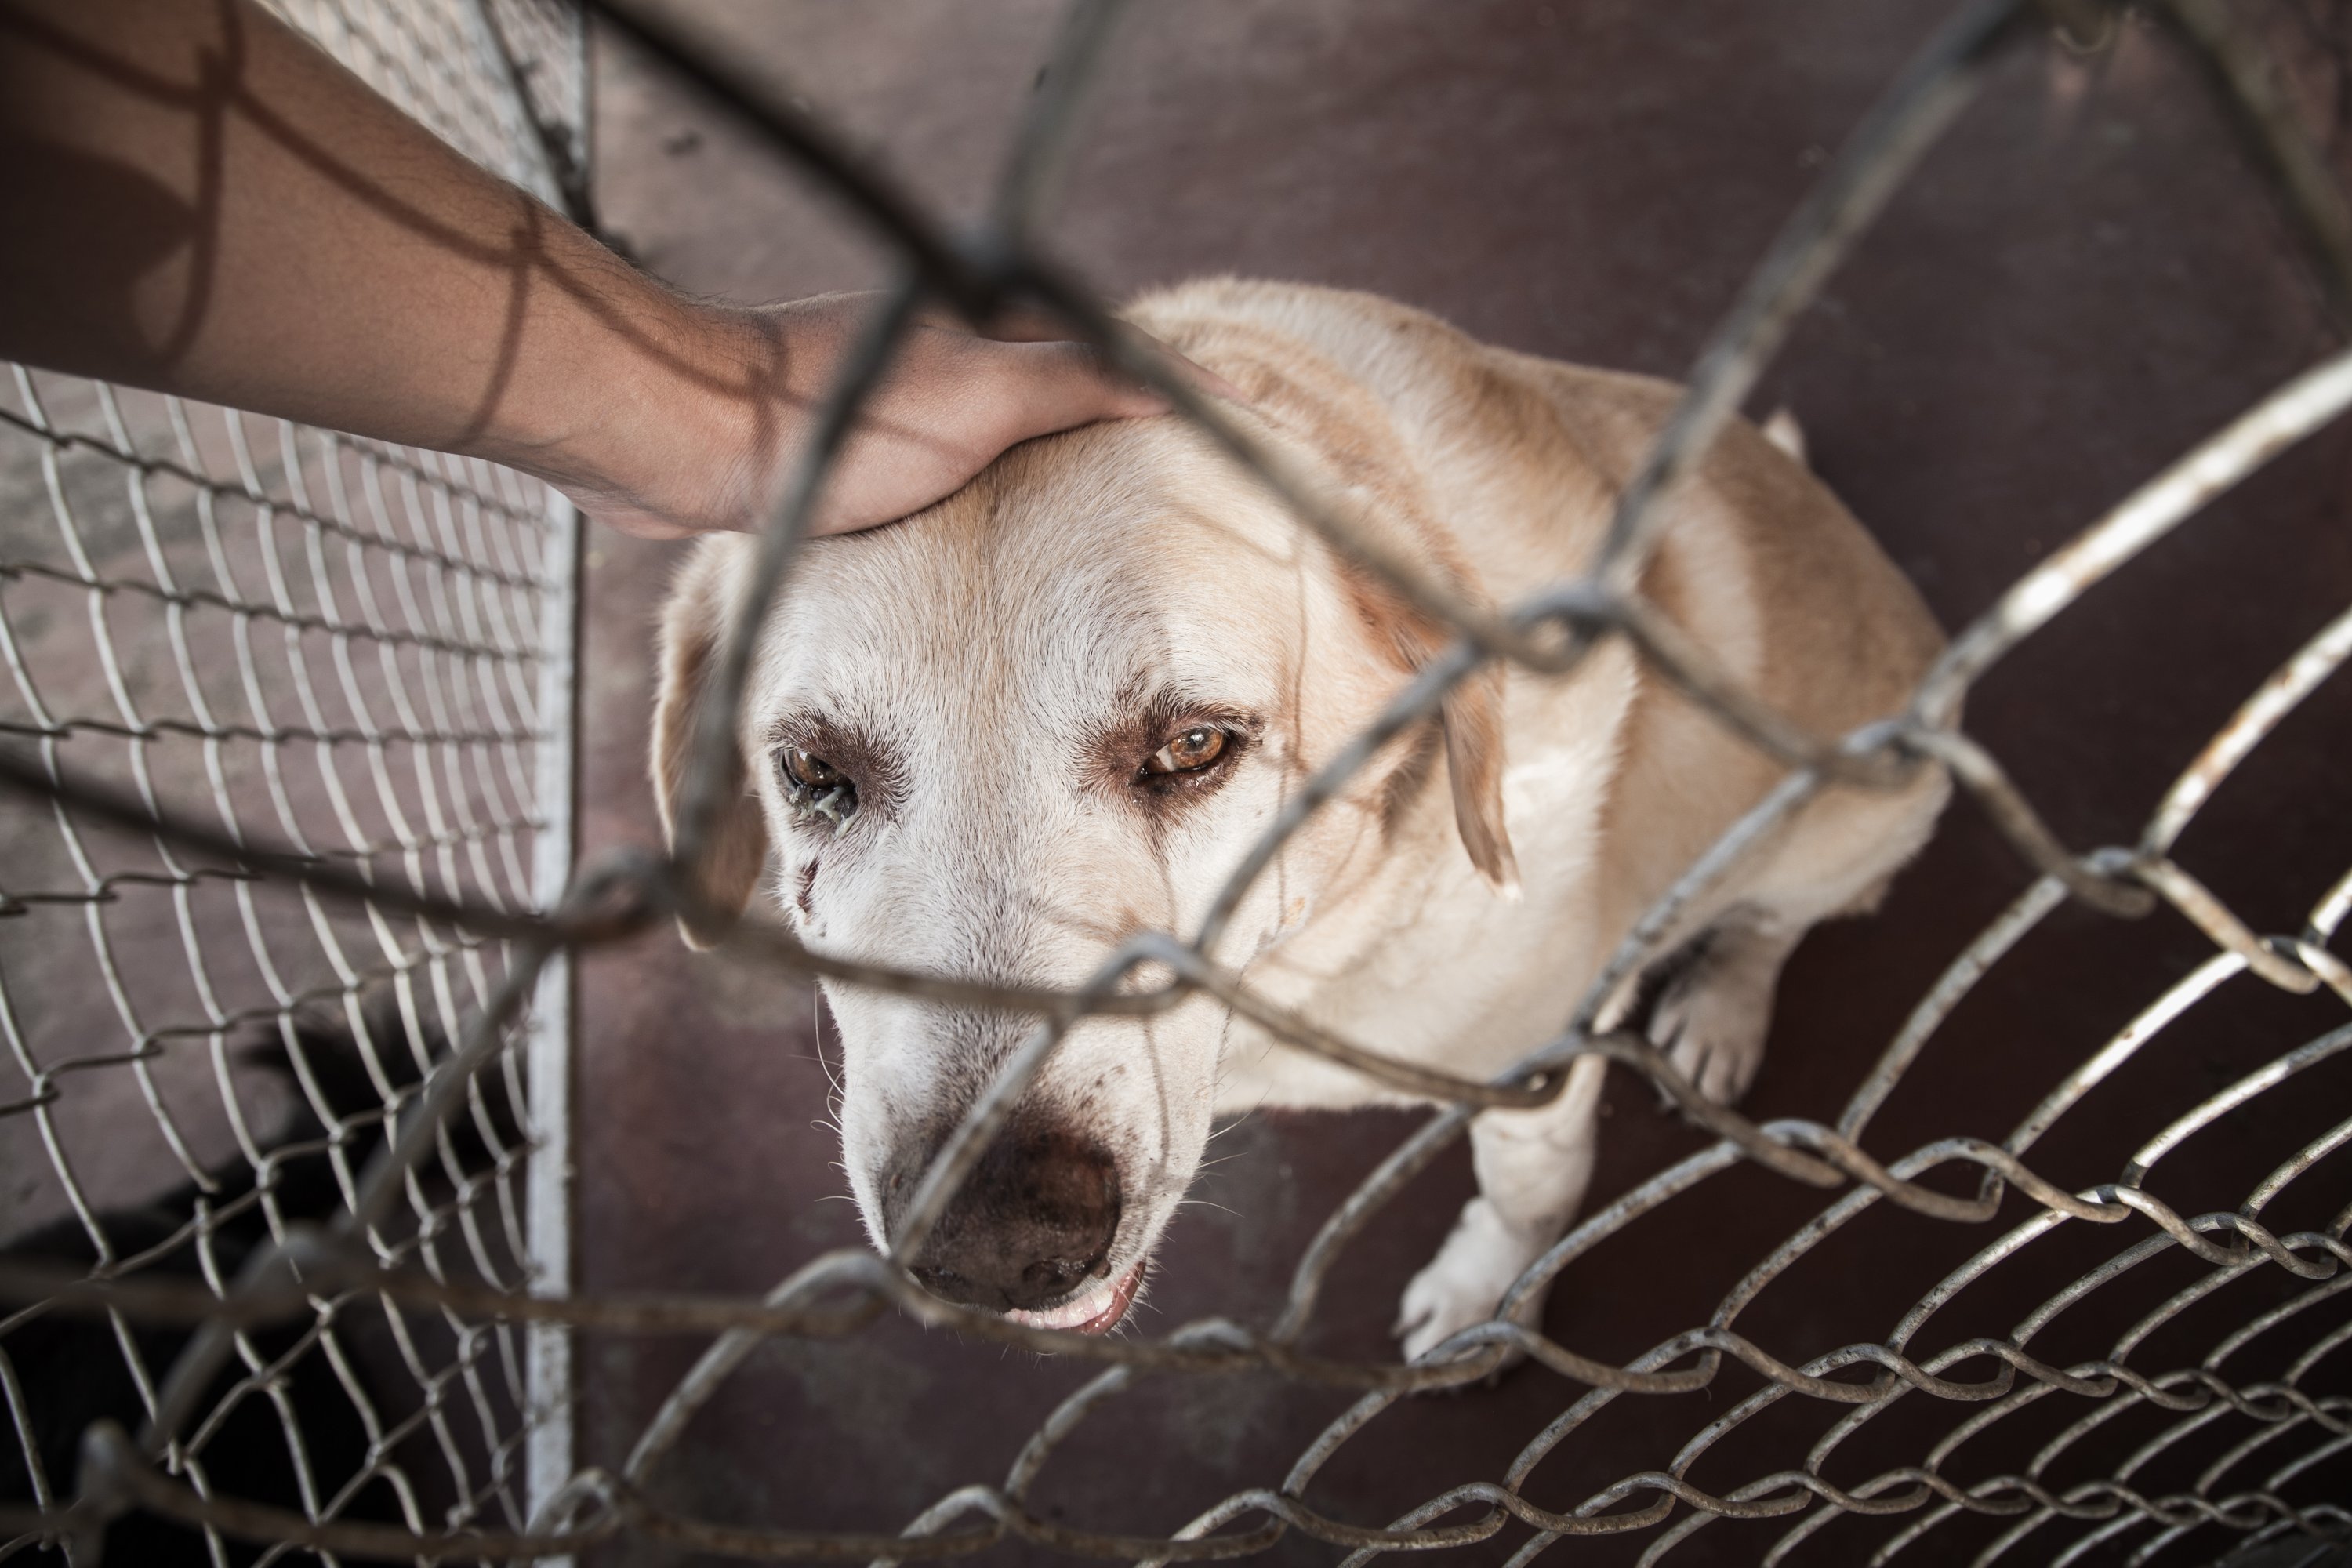 'İnsanlar tarafından yaşam alanlarından mahrum bırakıldığı için çöplerden yiyecek arayan, otoparklara ya da apartmanlara sığınan sokak kedi ve köpeklerine zulmeterek işkence edip öldürenlerin cezasız kaldığı bir ülkede adalet yok.'  (Shutterstock Fotoğrafı)